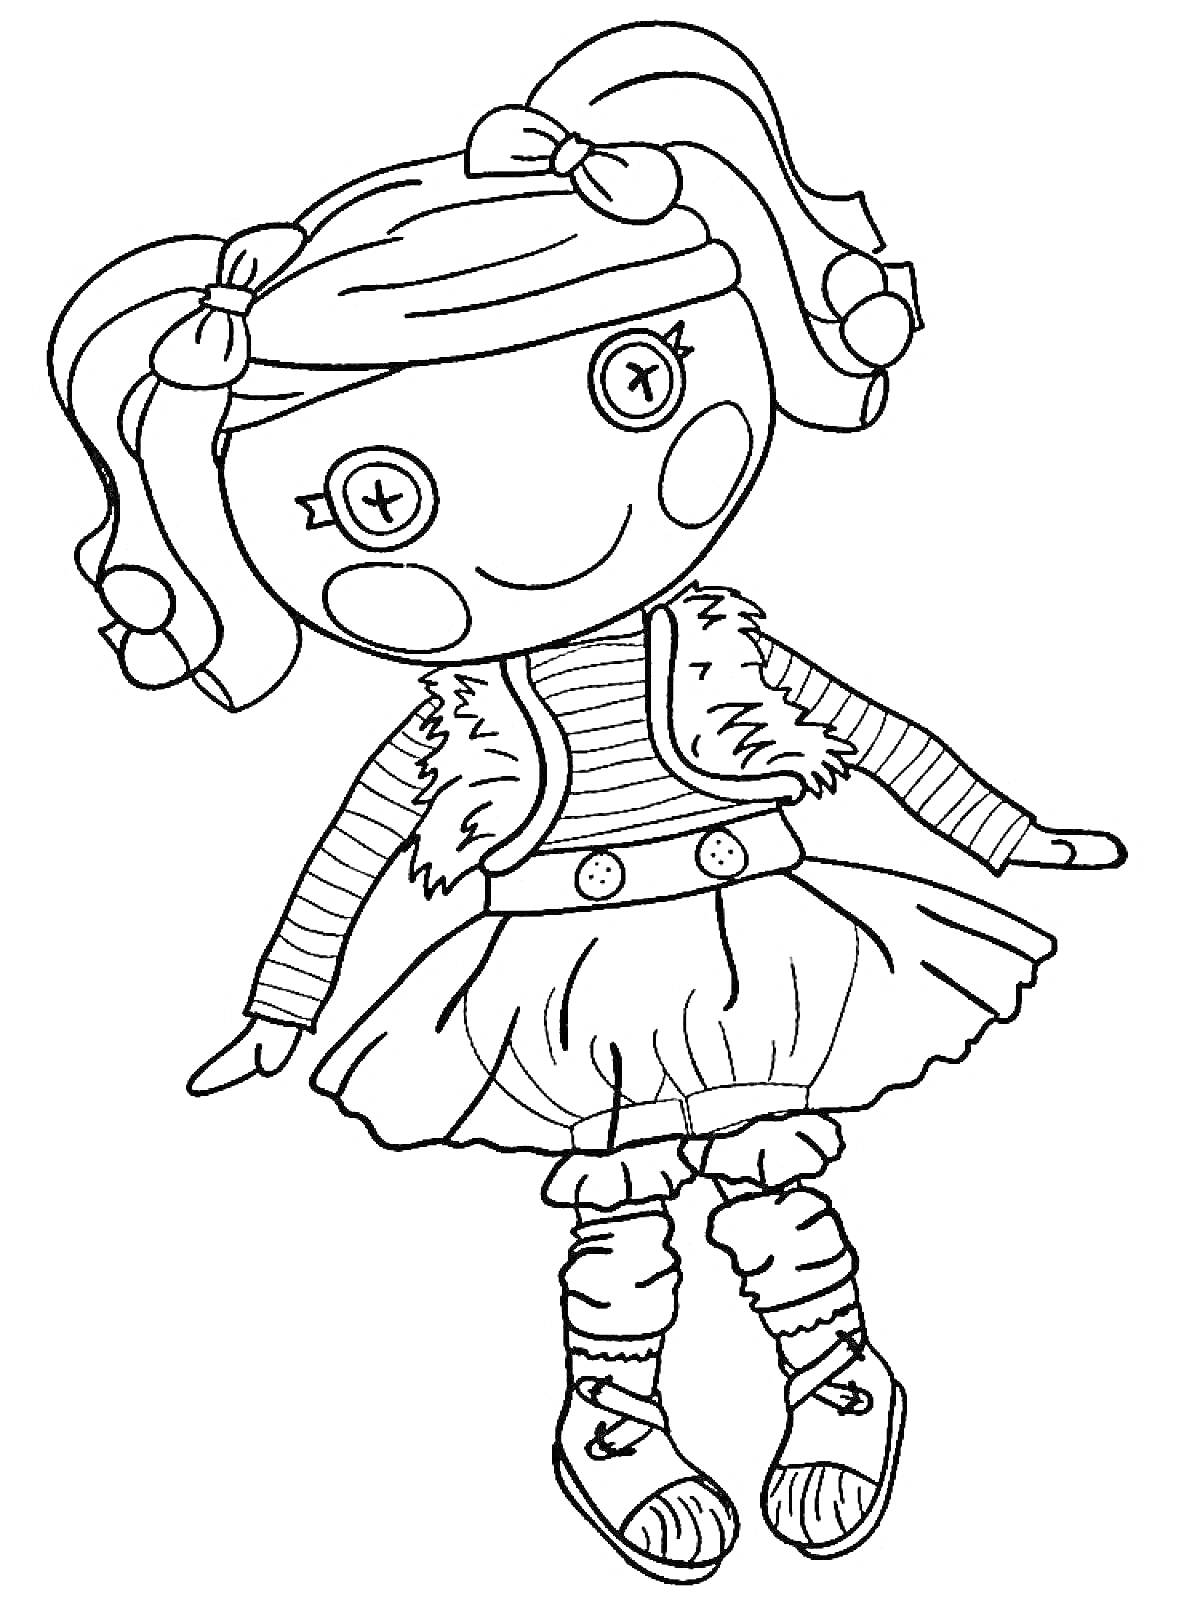 Кукла с пуговицами вместо глаз в полосатой кофте, жилетке и платье, с двумя хвостиками и бантиками